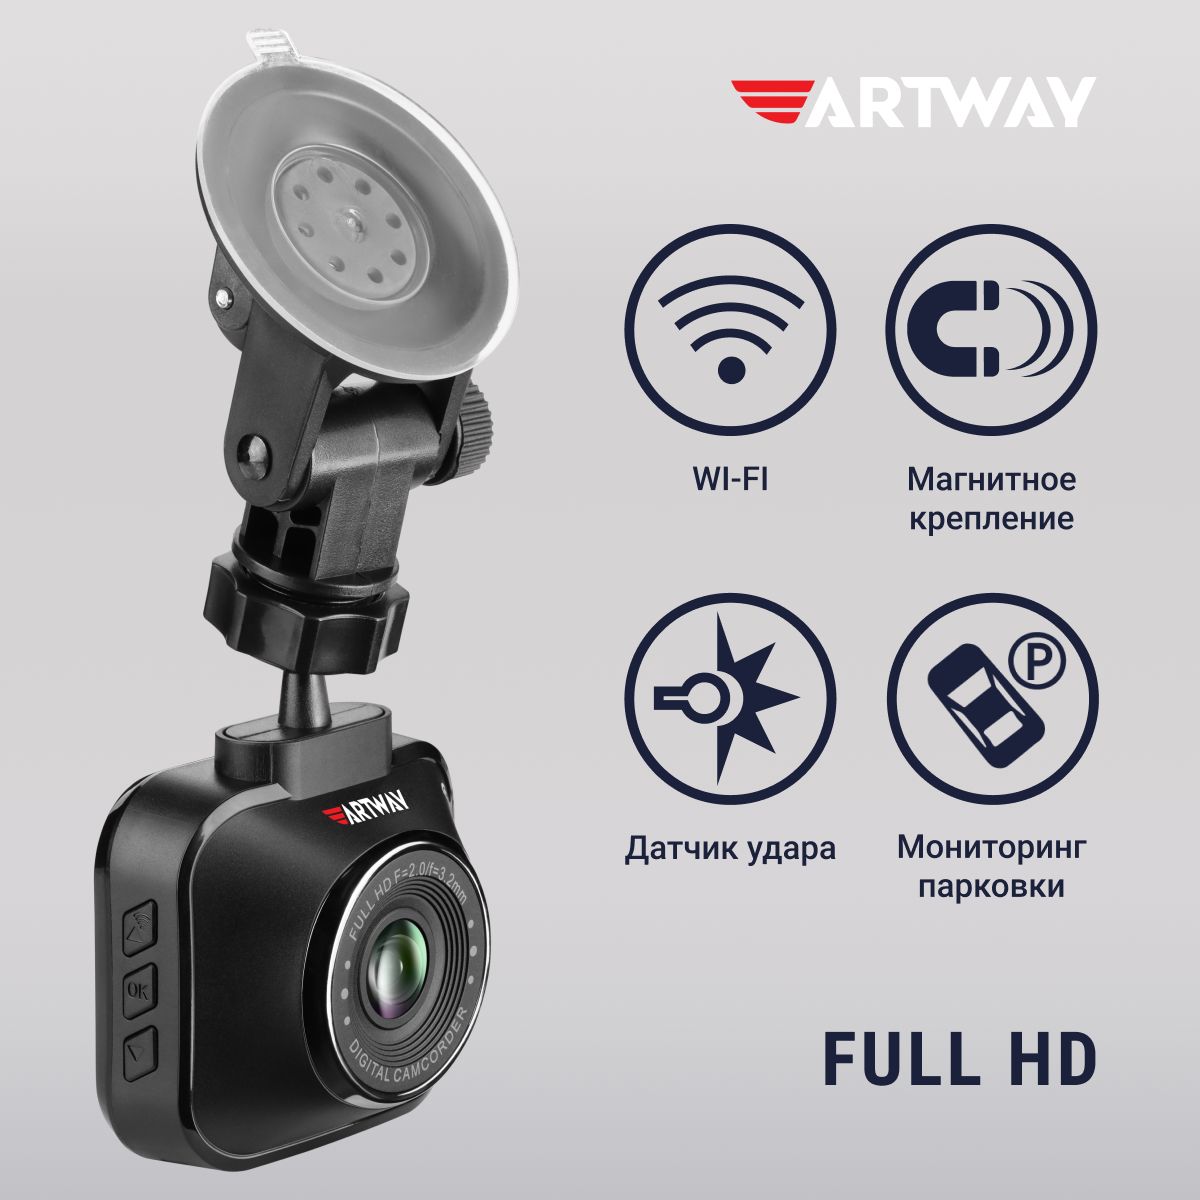 ВидеорегистраторавтомобильныйArtwayAV-407FullHD,WiFi,режимпарковки,регистратордляавтомобиля